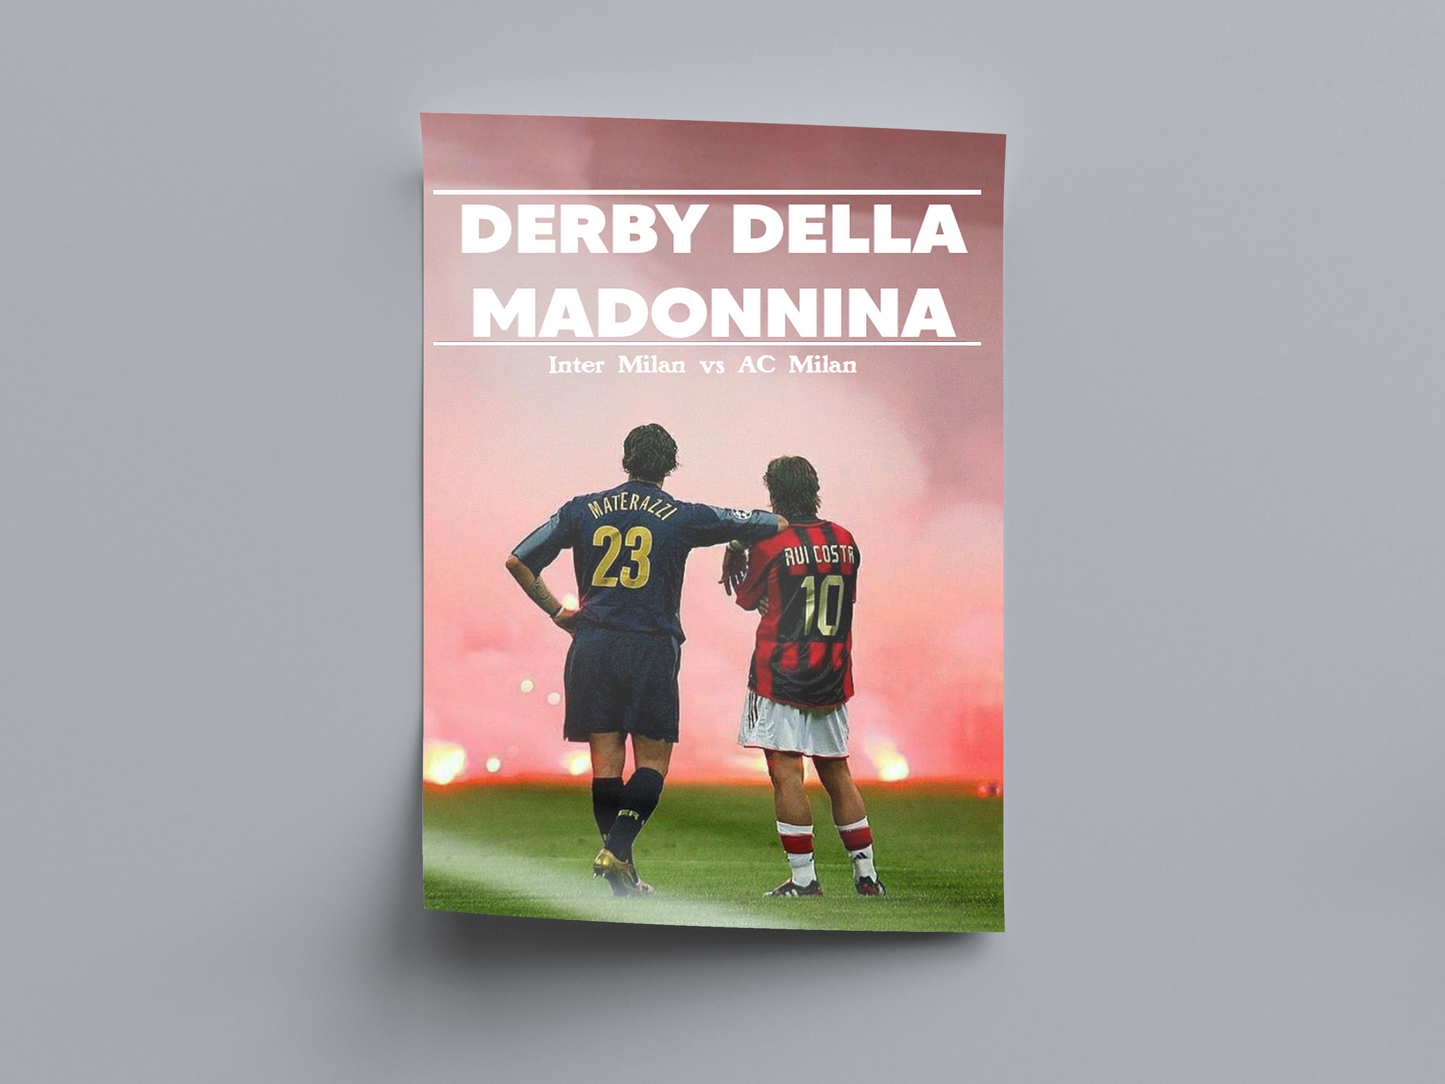 Milan Derby: Derby Della Madonnina